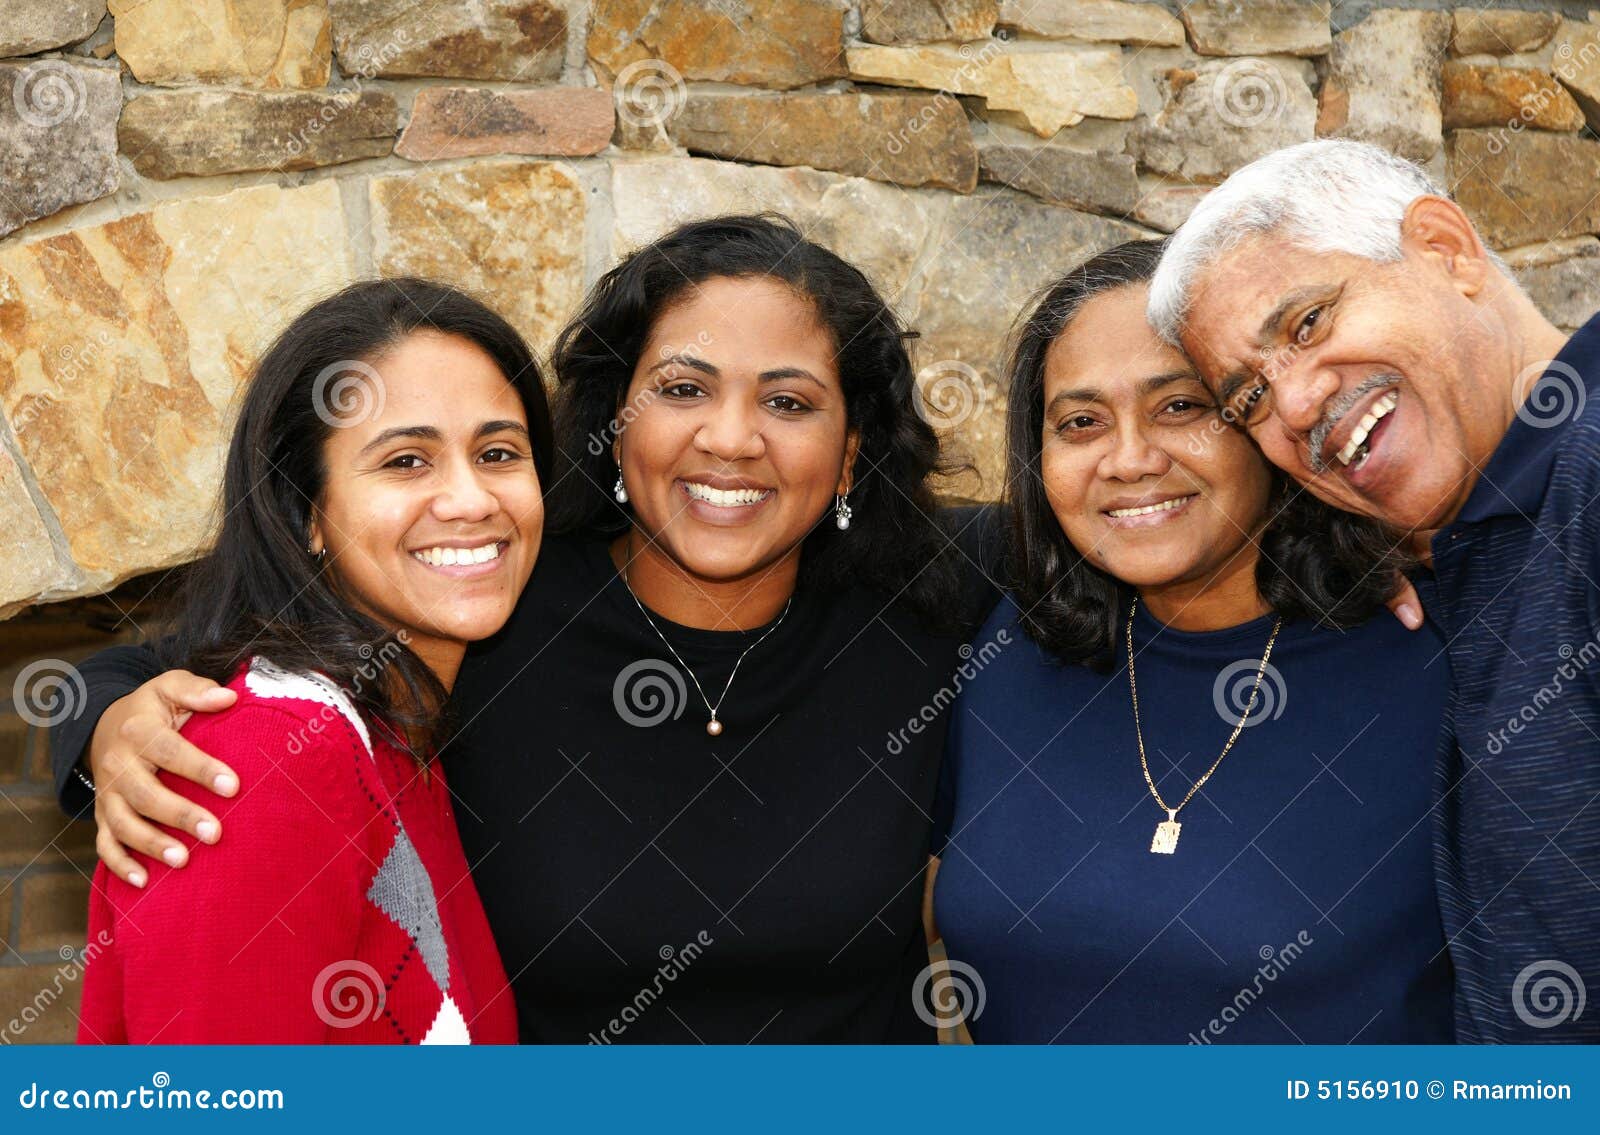 minority family